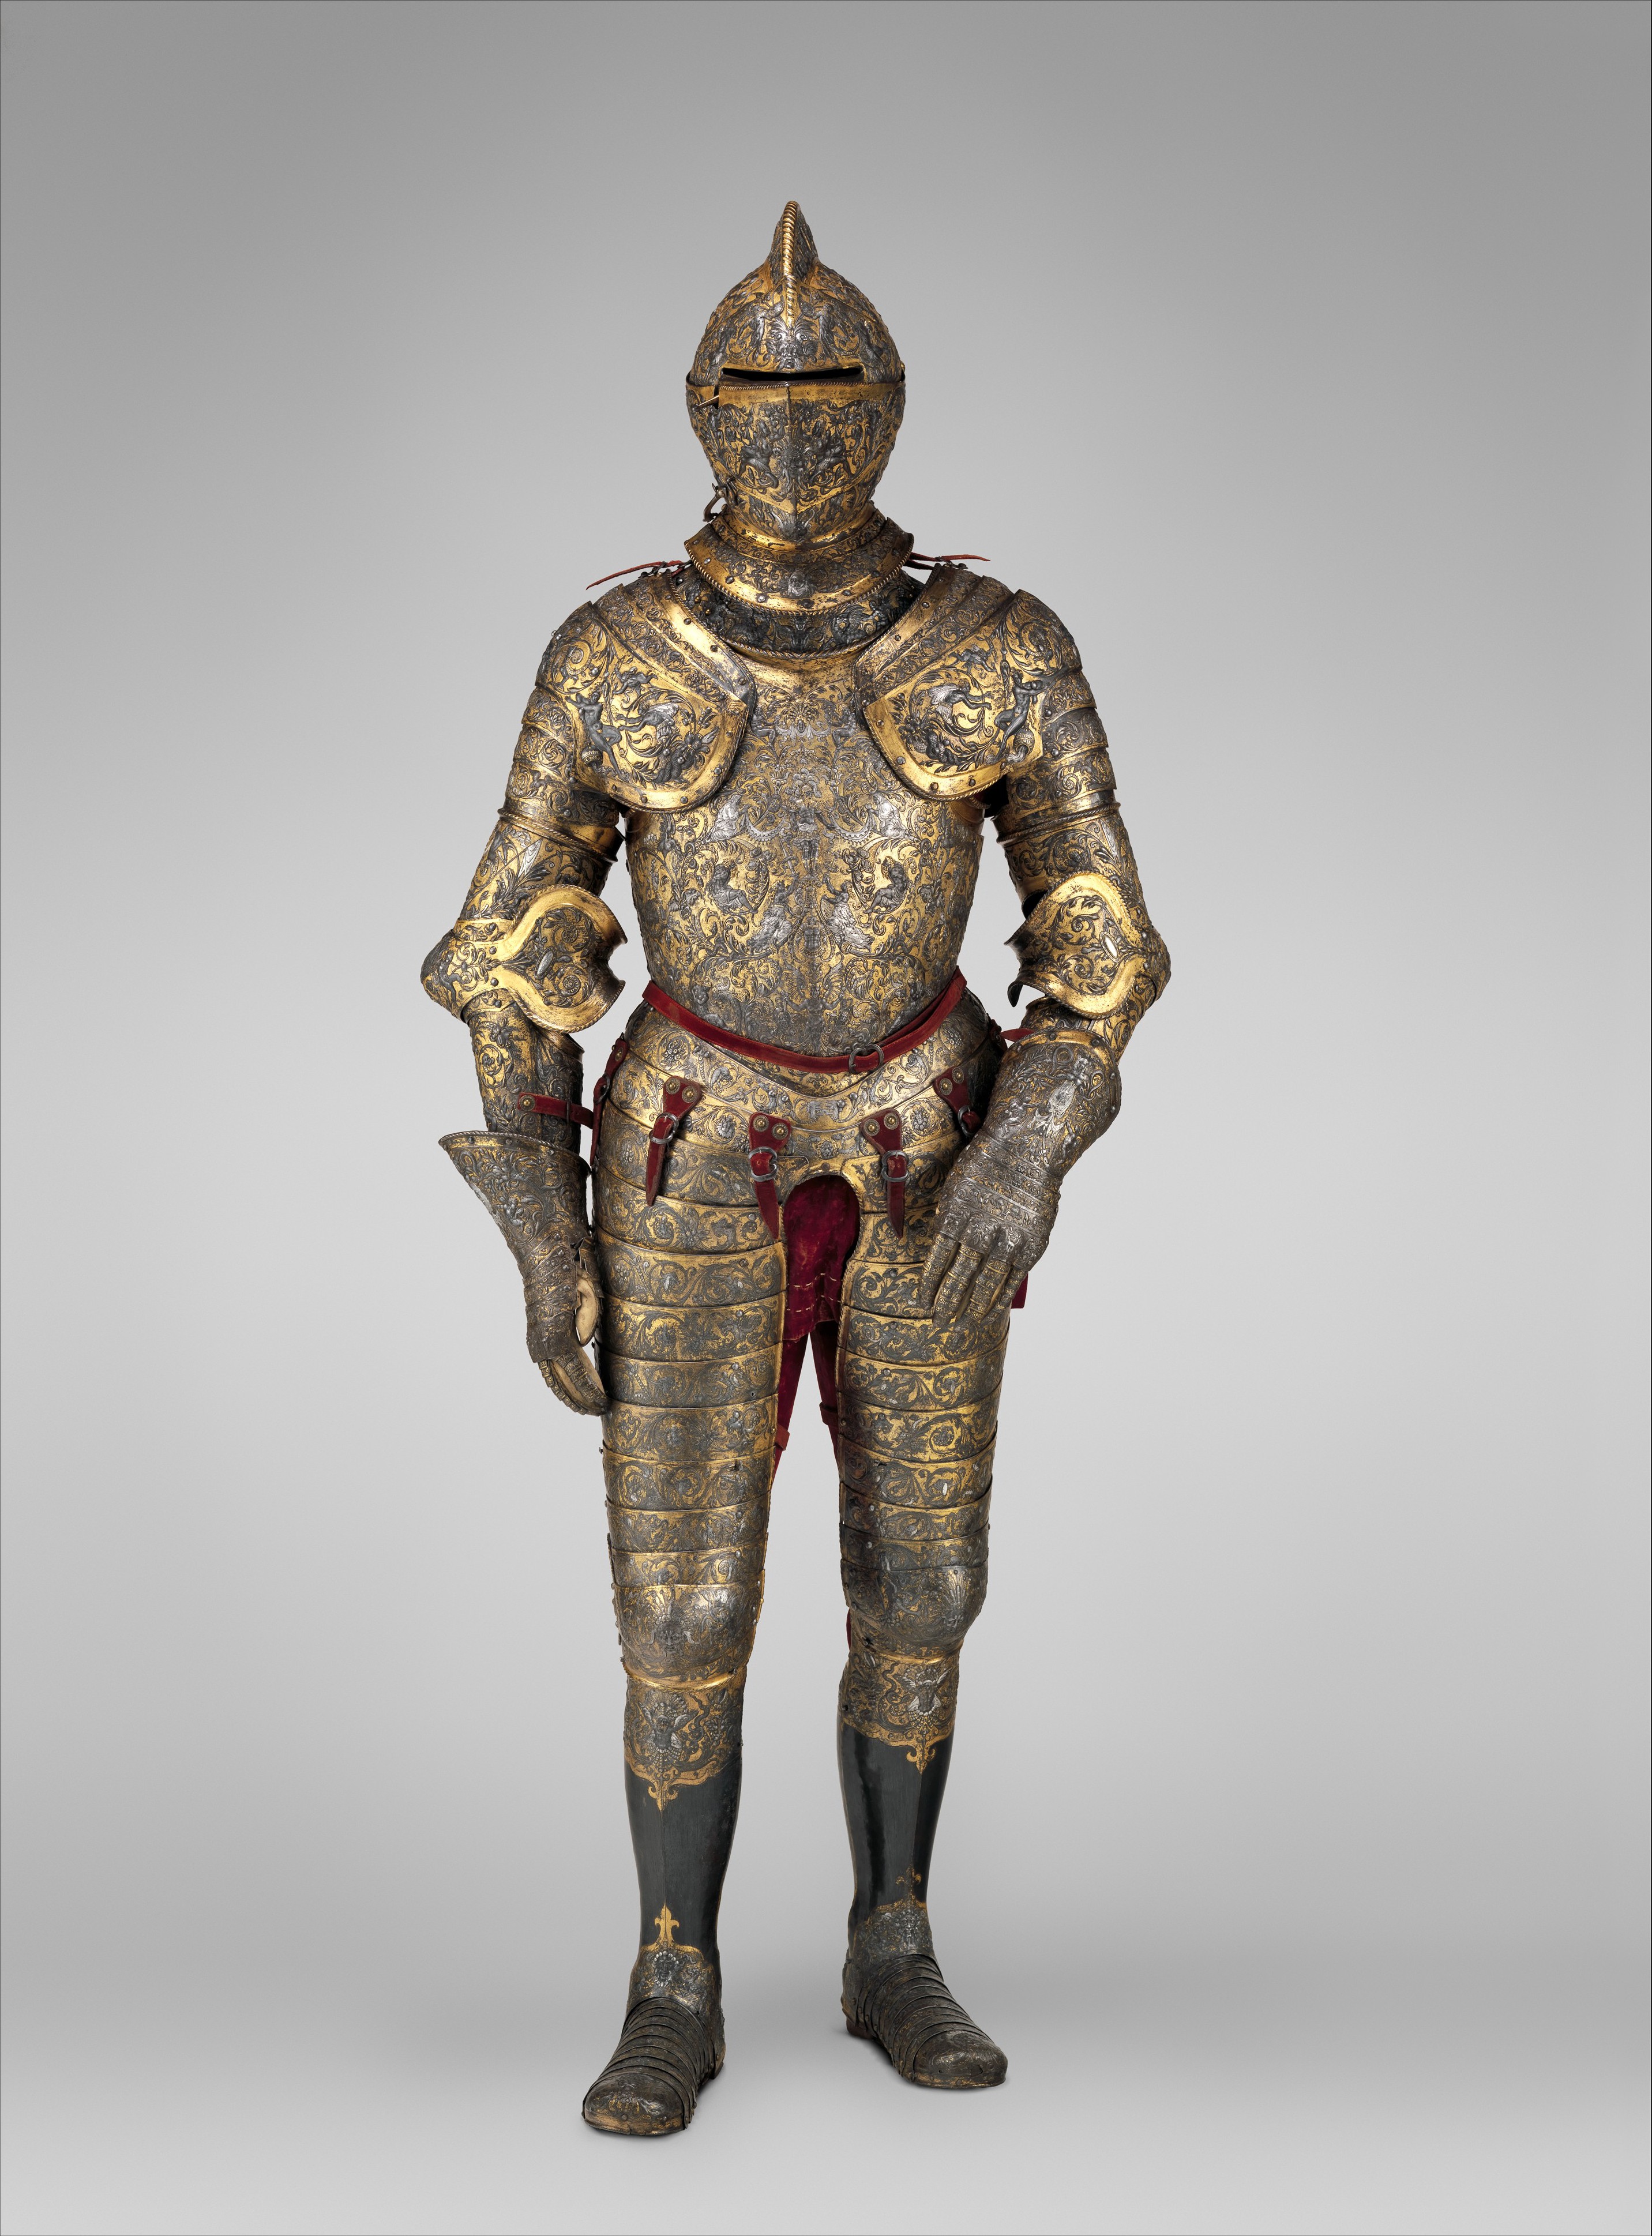 フランス王ヘンリー2世の鎧 by Jean Cousin le Vieux - 1555年頃 - 187.96 cm, 24.20 kg 